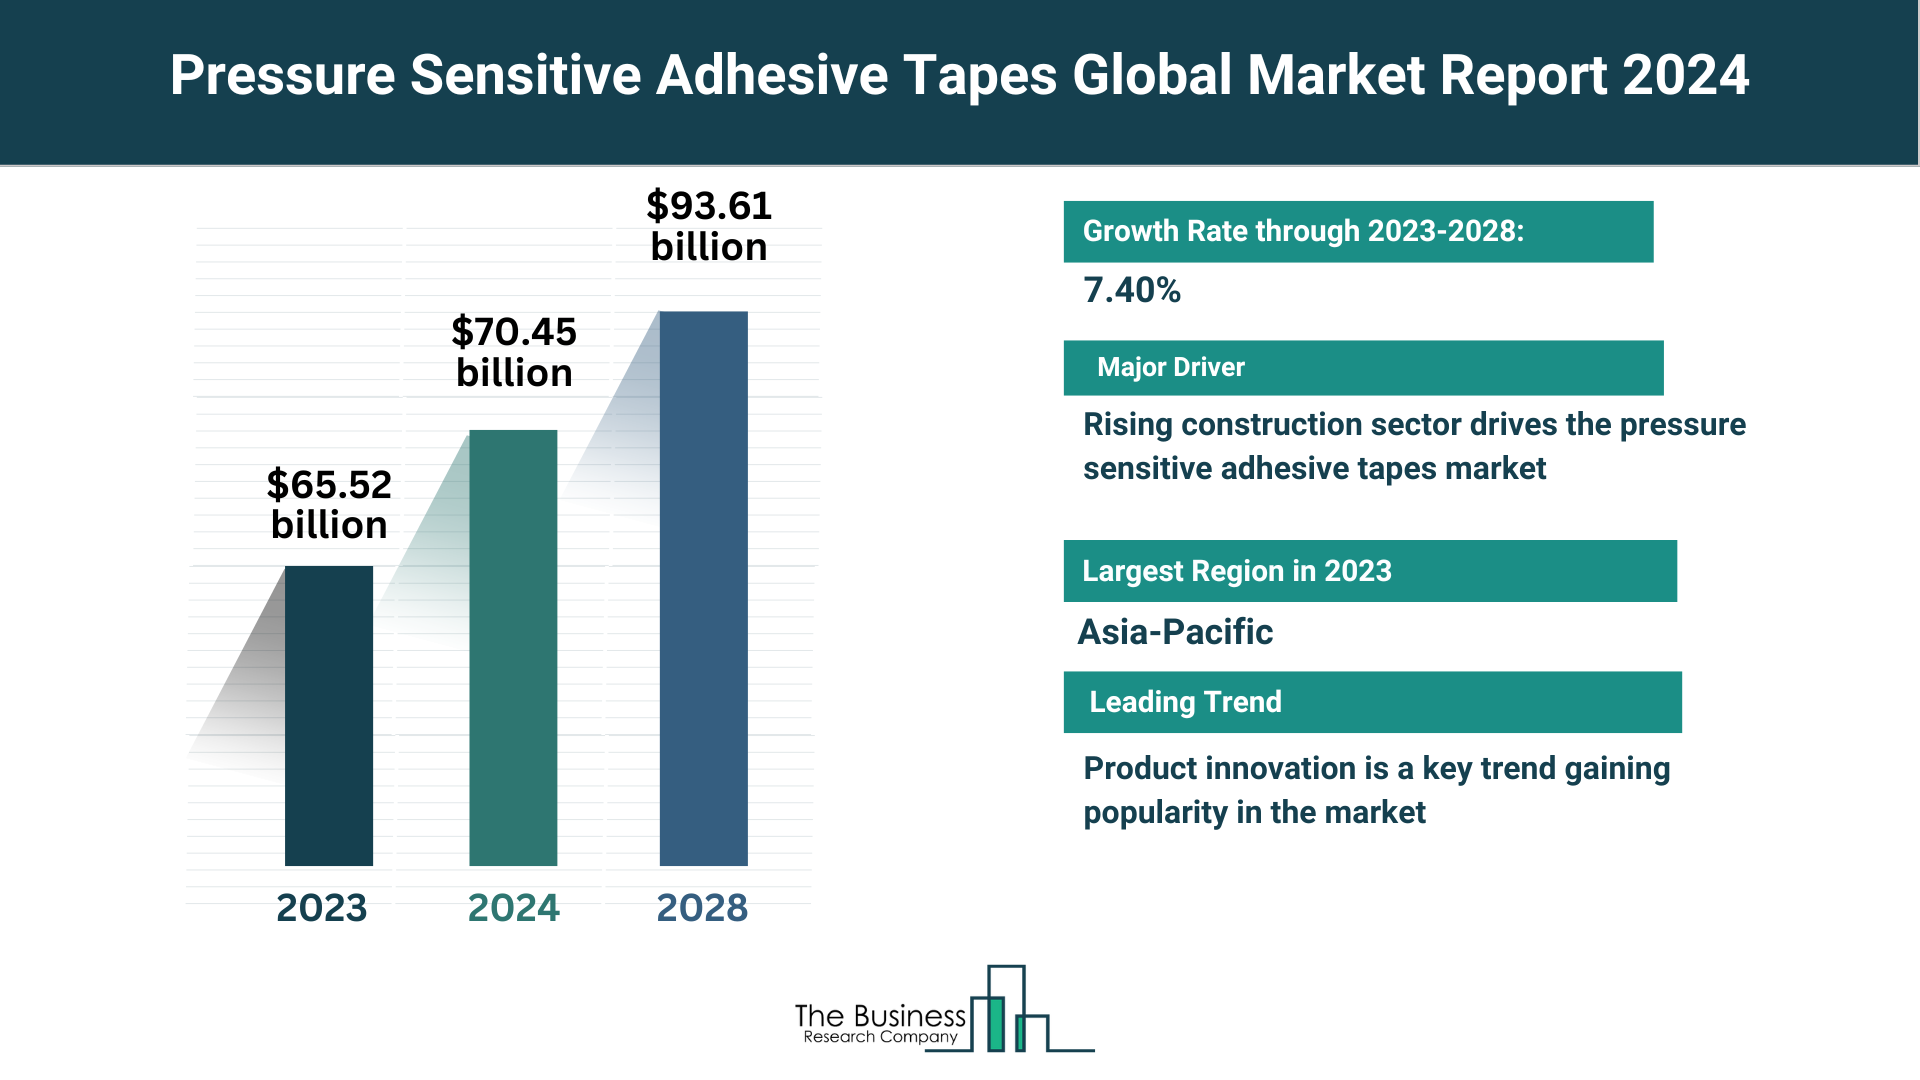 Global Pressure Sensitive Adhesive Tapes Market